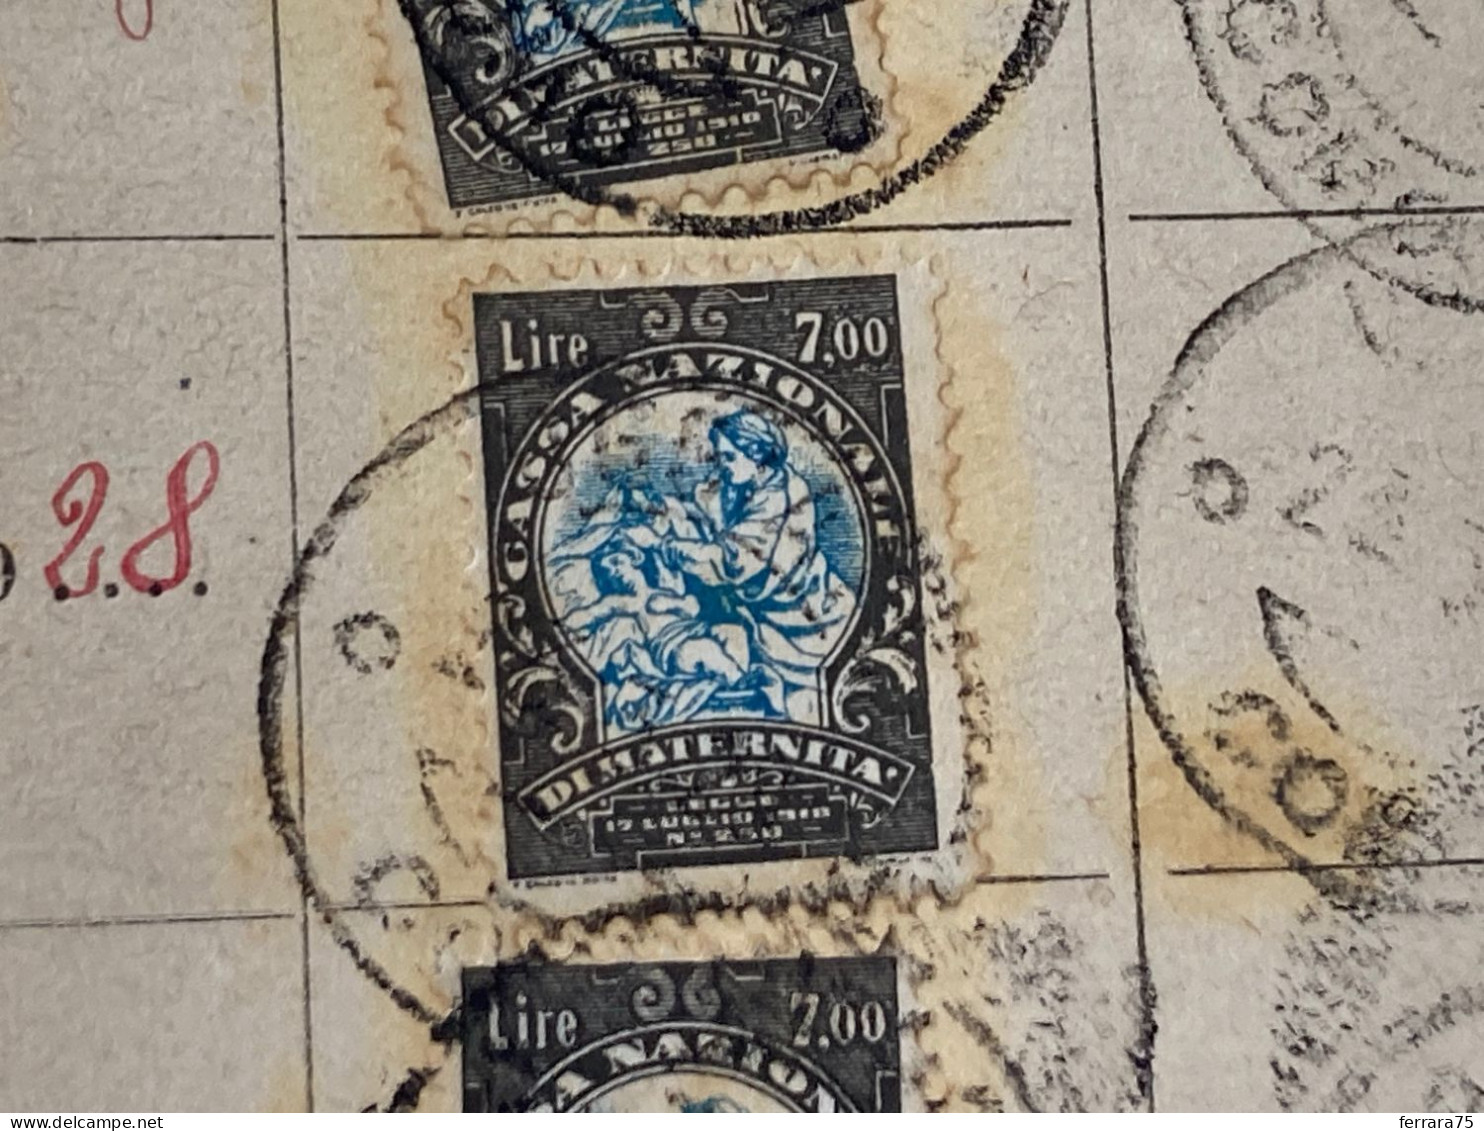 LOTTO N.4 MARCHE  DA BOLLO CASSA NAZIONALE DI MATERNITà 1927/1930. - Revenue Stamps